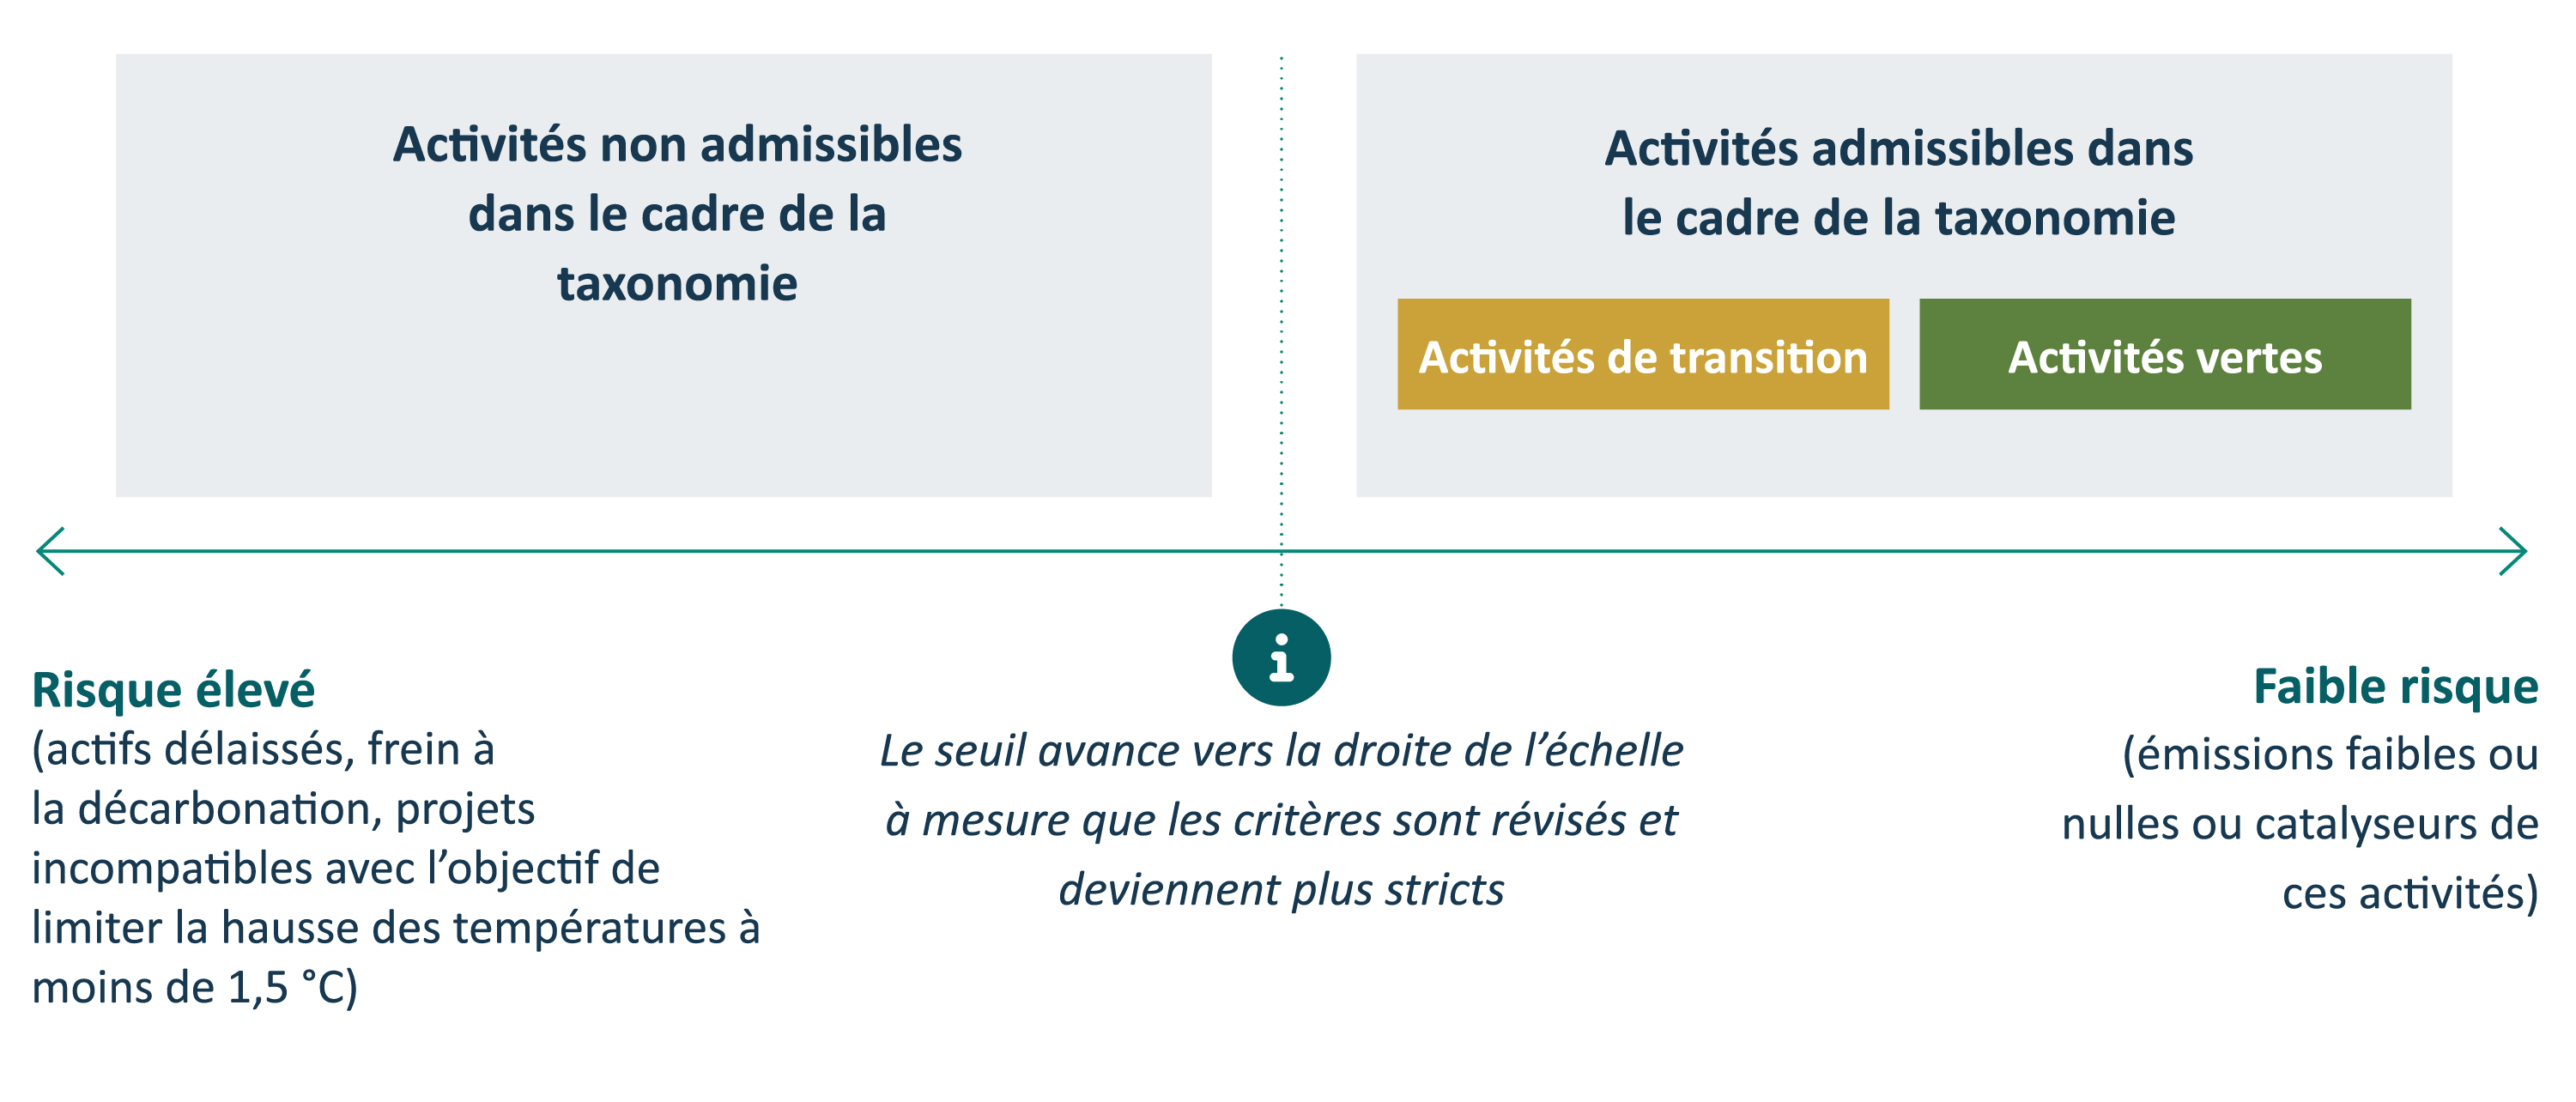 Schéma 1 : Exemple  de cadre de taxonomie de la finance  verte et de transition avec critères dynamiques